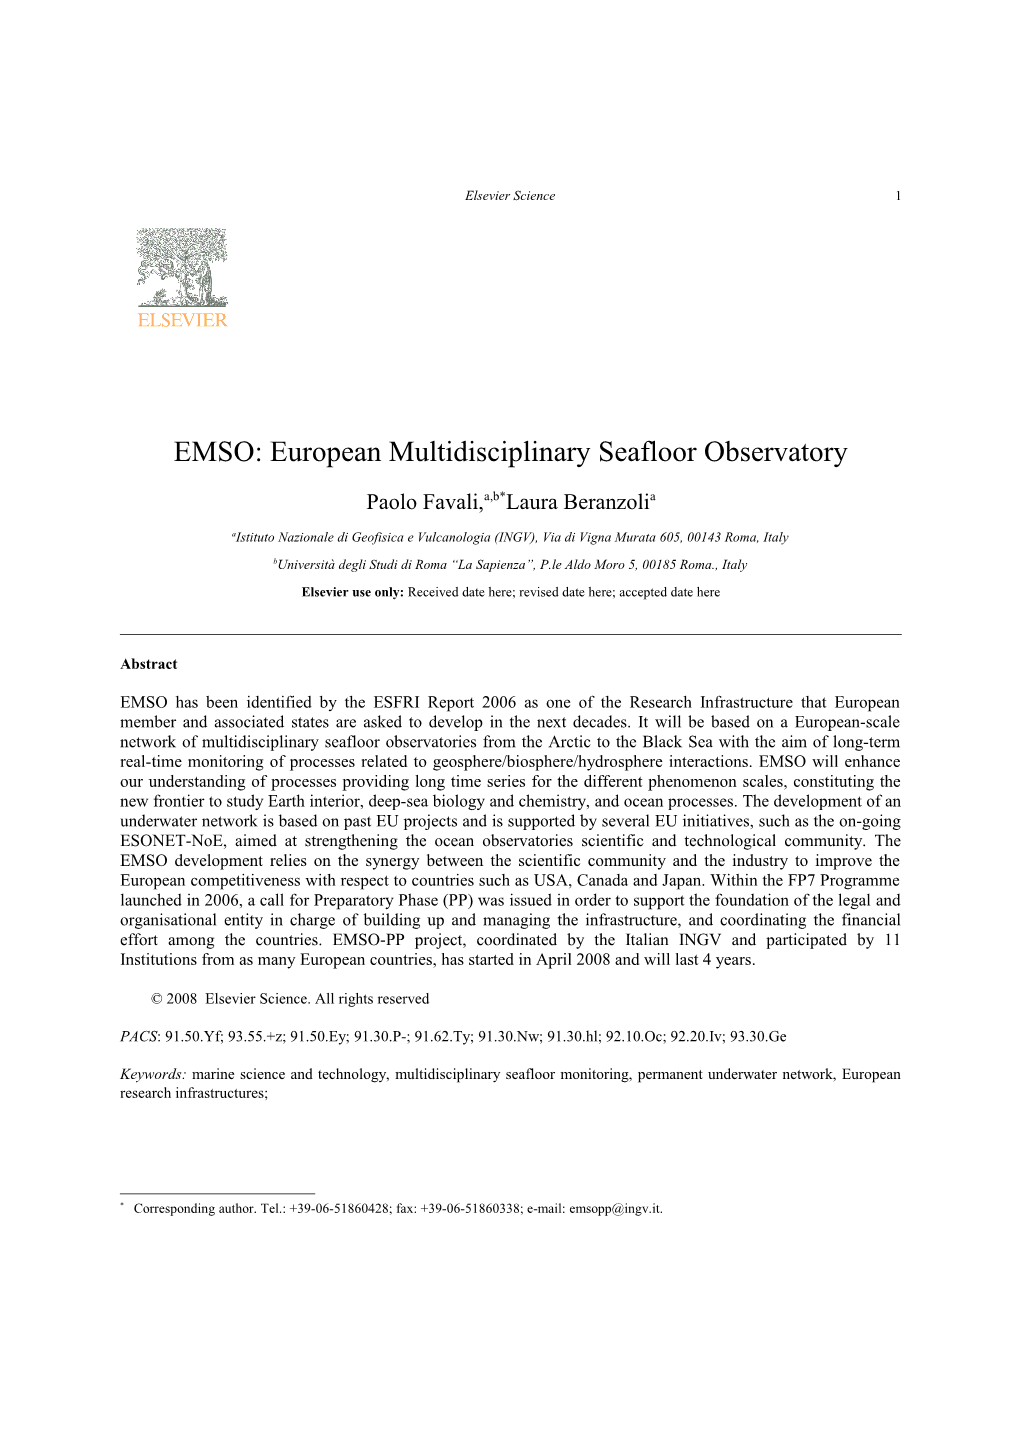 EMSO: European Multidisciplinary Seafloor Observatory